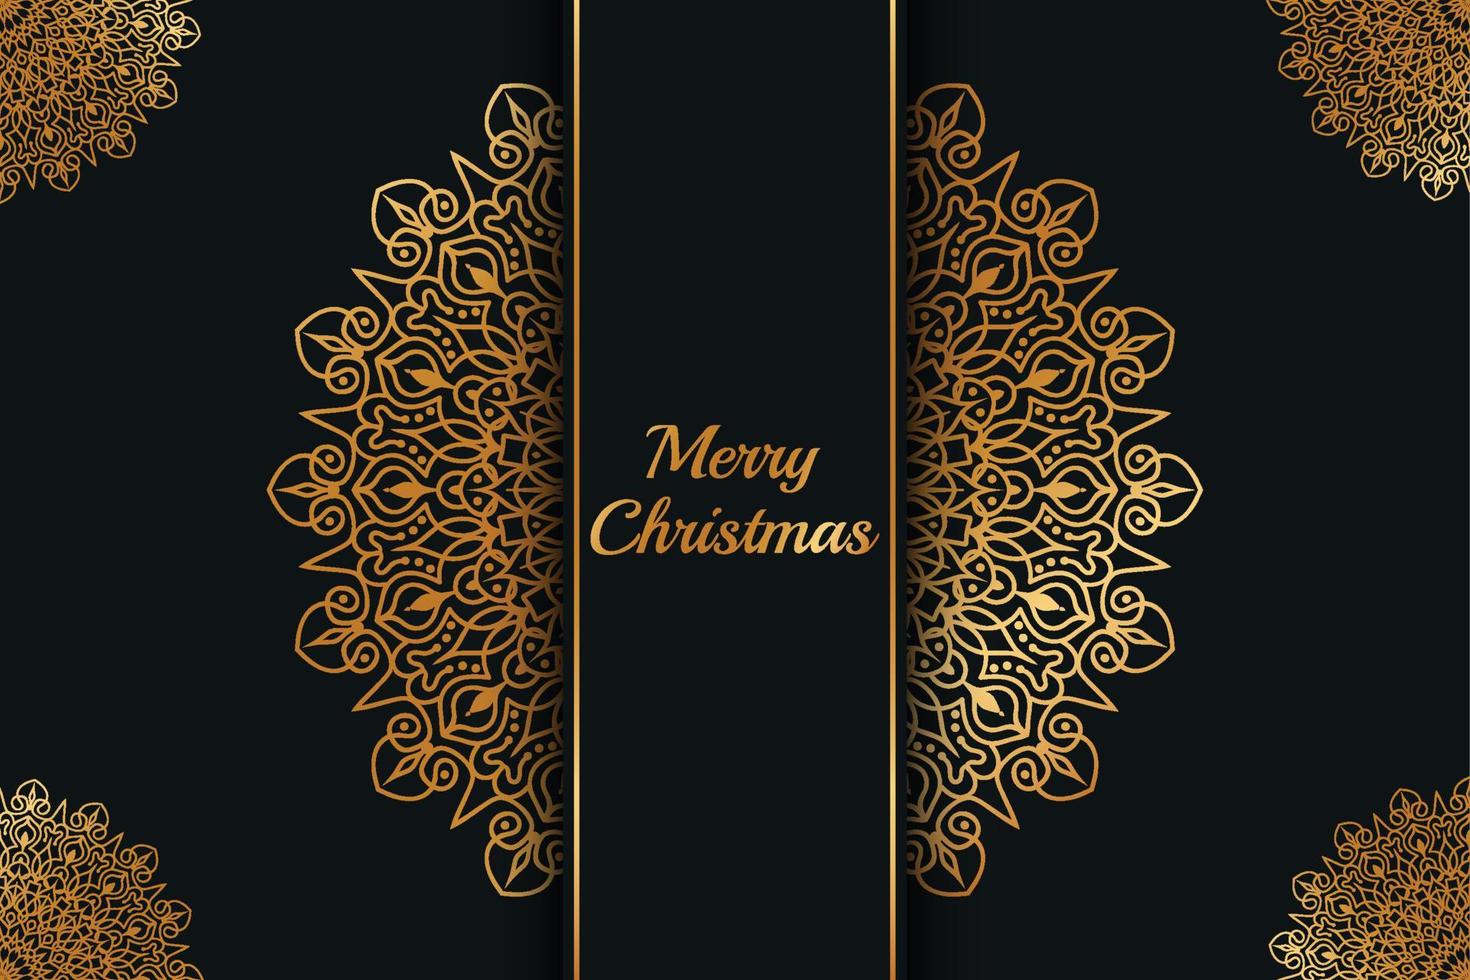 Weihnachts-Luxus-Mandala-Design-Hintergrund pro vektor